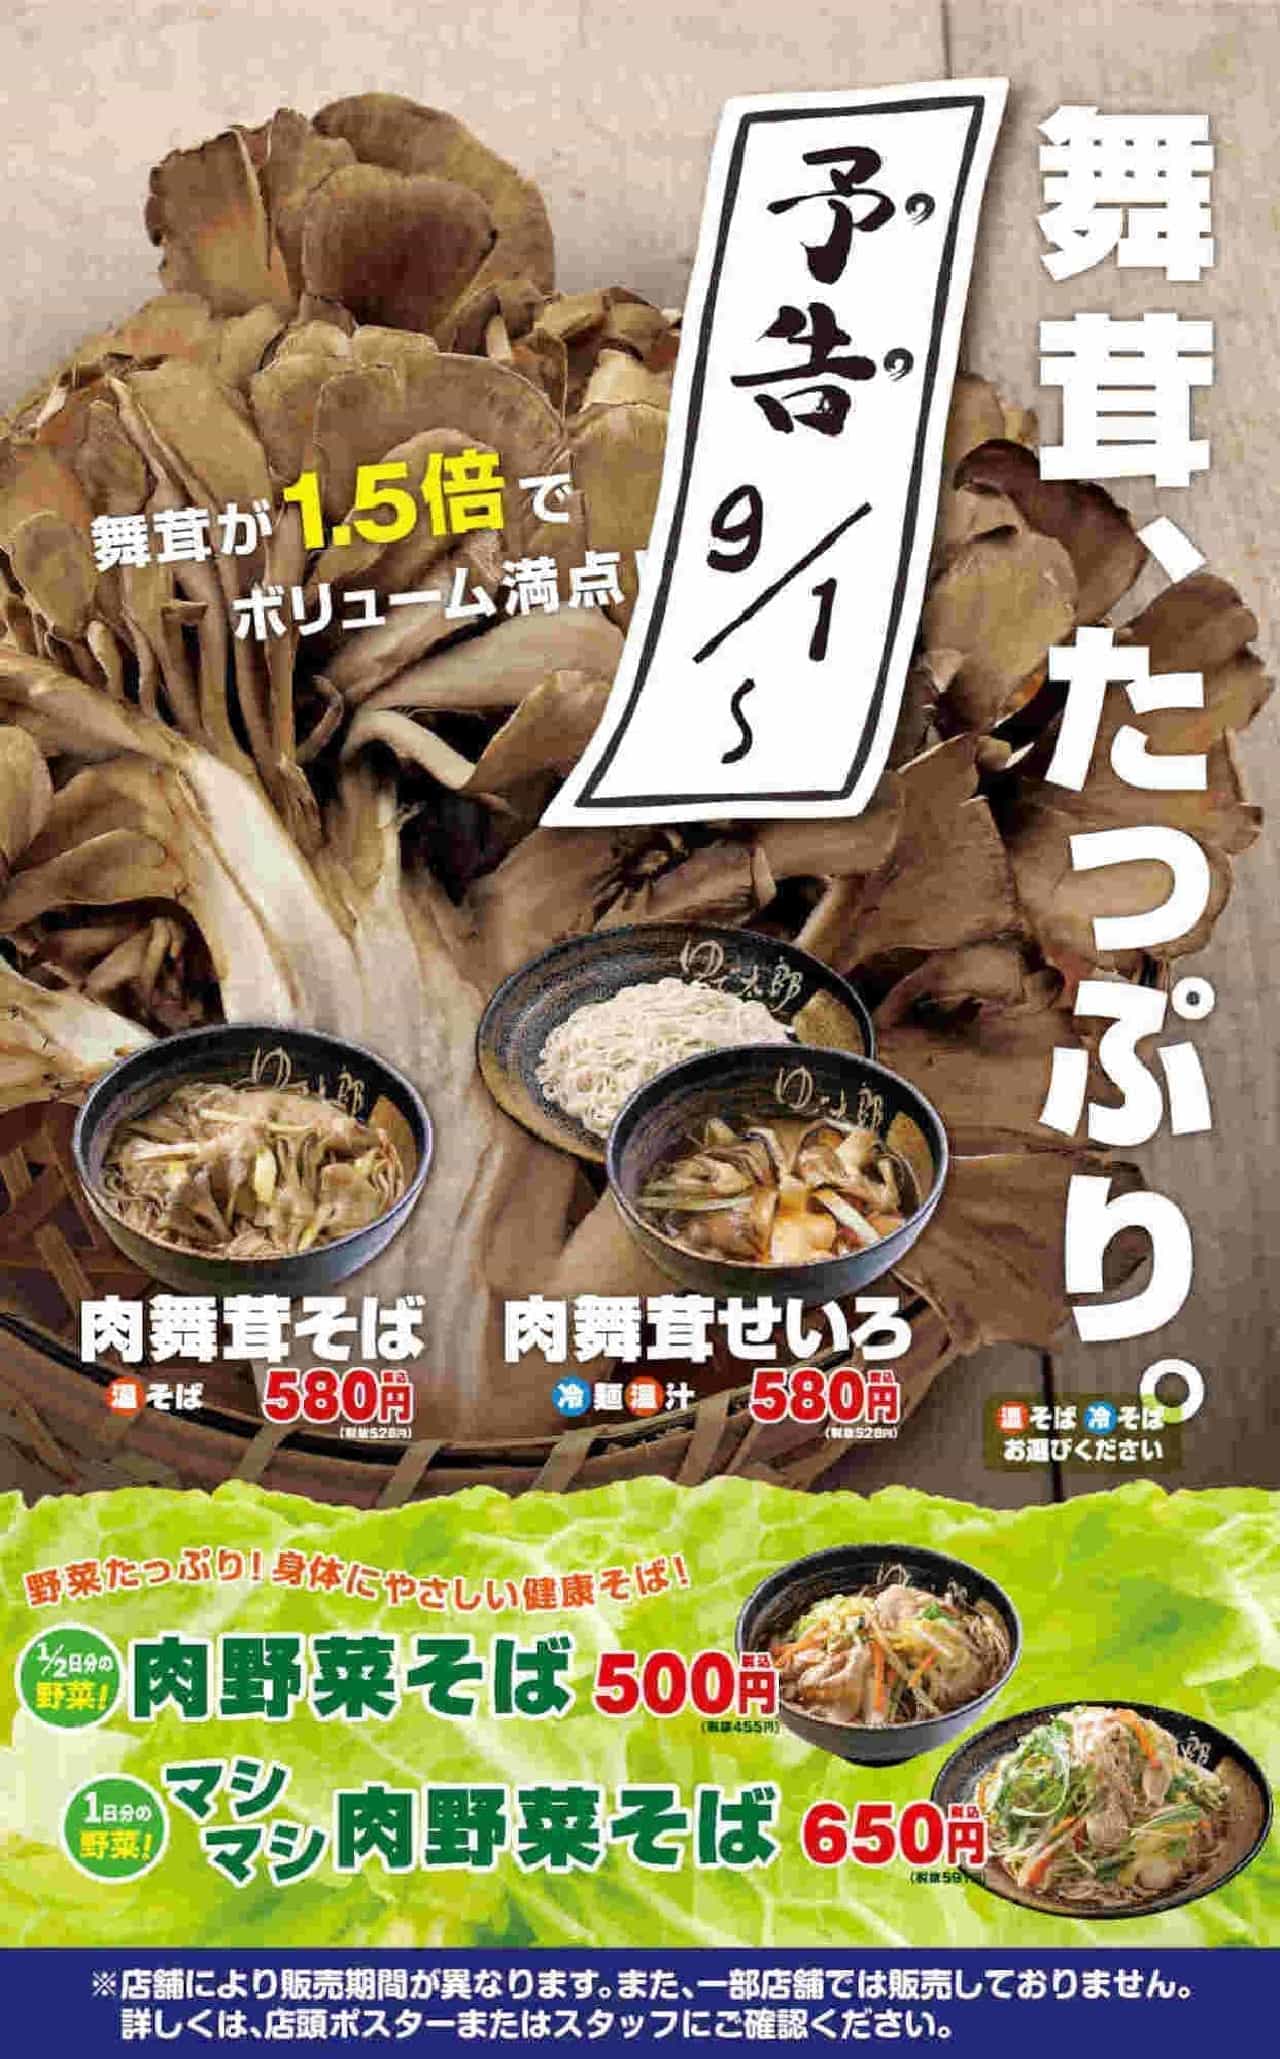 "Meat Maitake Soba" and "Meat Maitake Seiro" for Boiled Taro